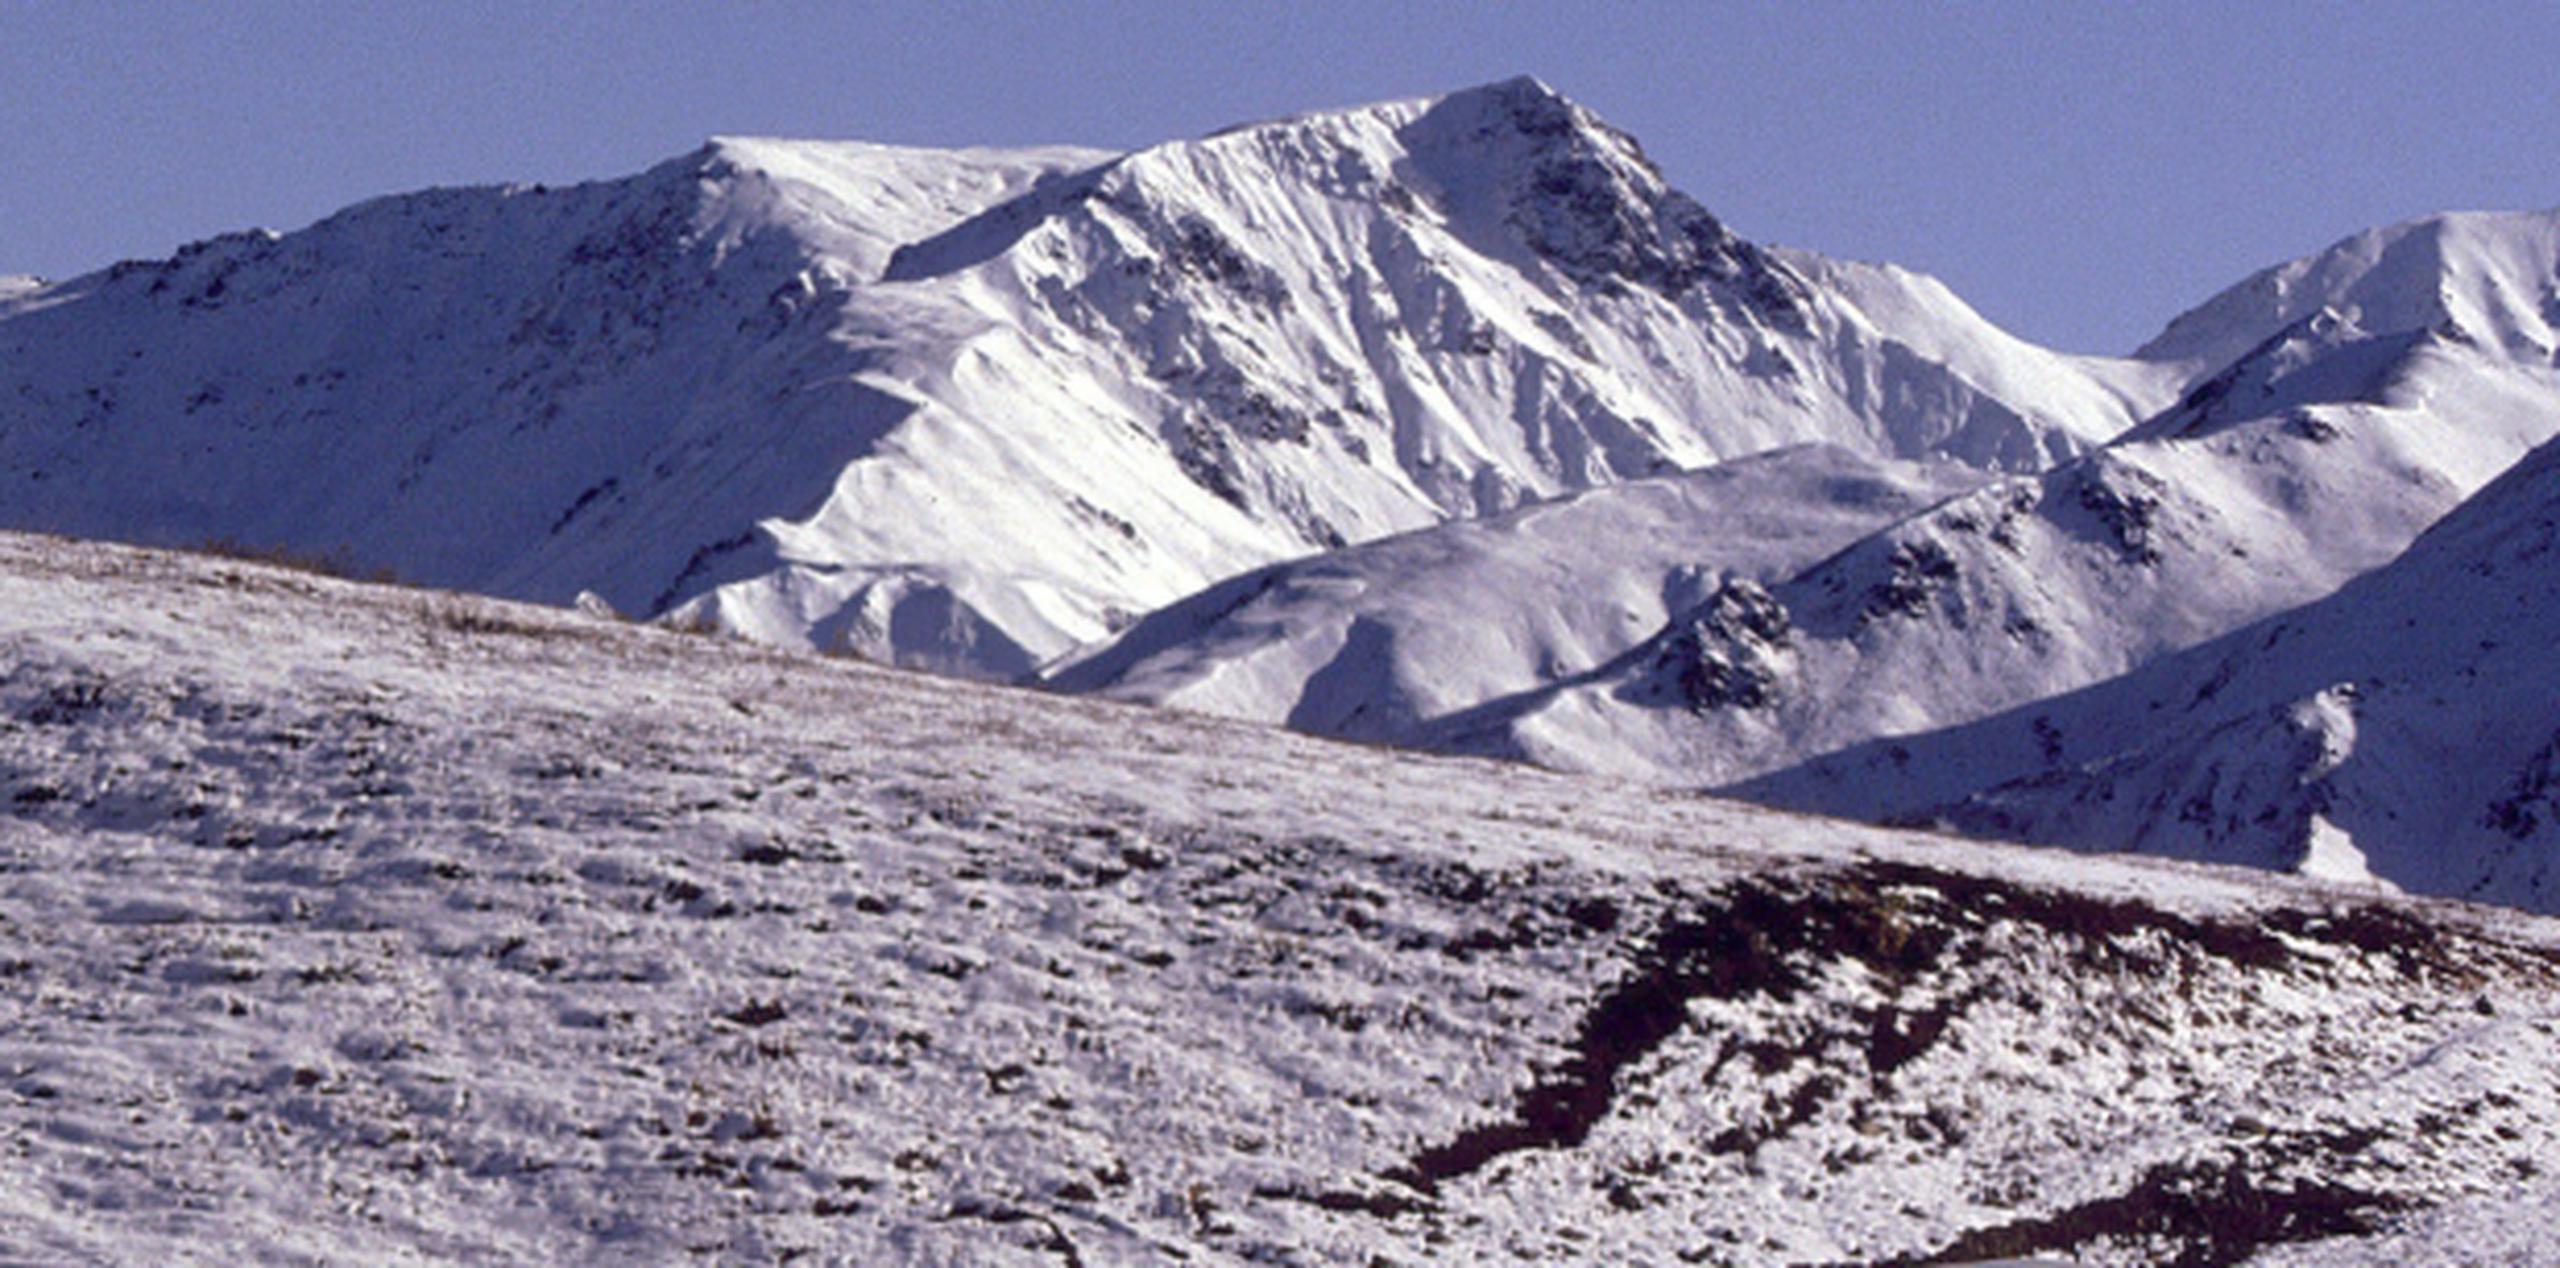 El geólogo especialista en glaciares Michael Loso estima que 36,000 escaladores depositaron entre 69 y 97 toneladas métricas de materia fecal en el glaciar Kahiltna. (Archivo)